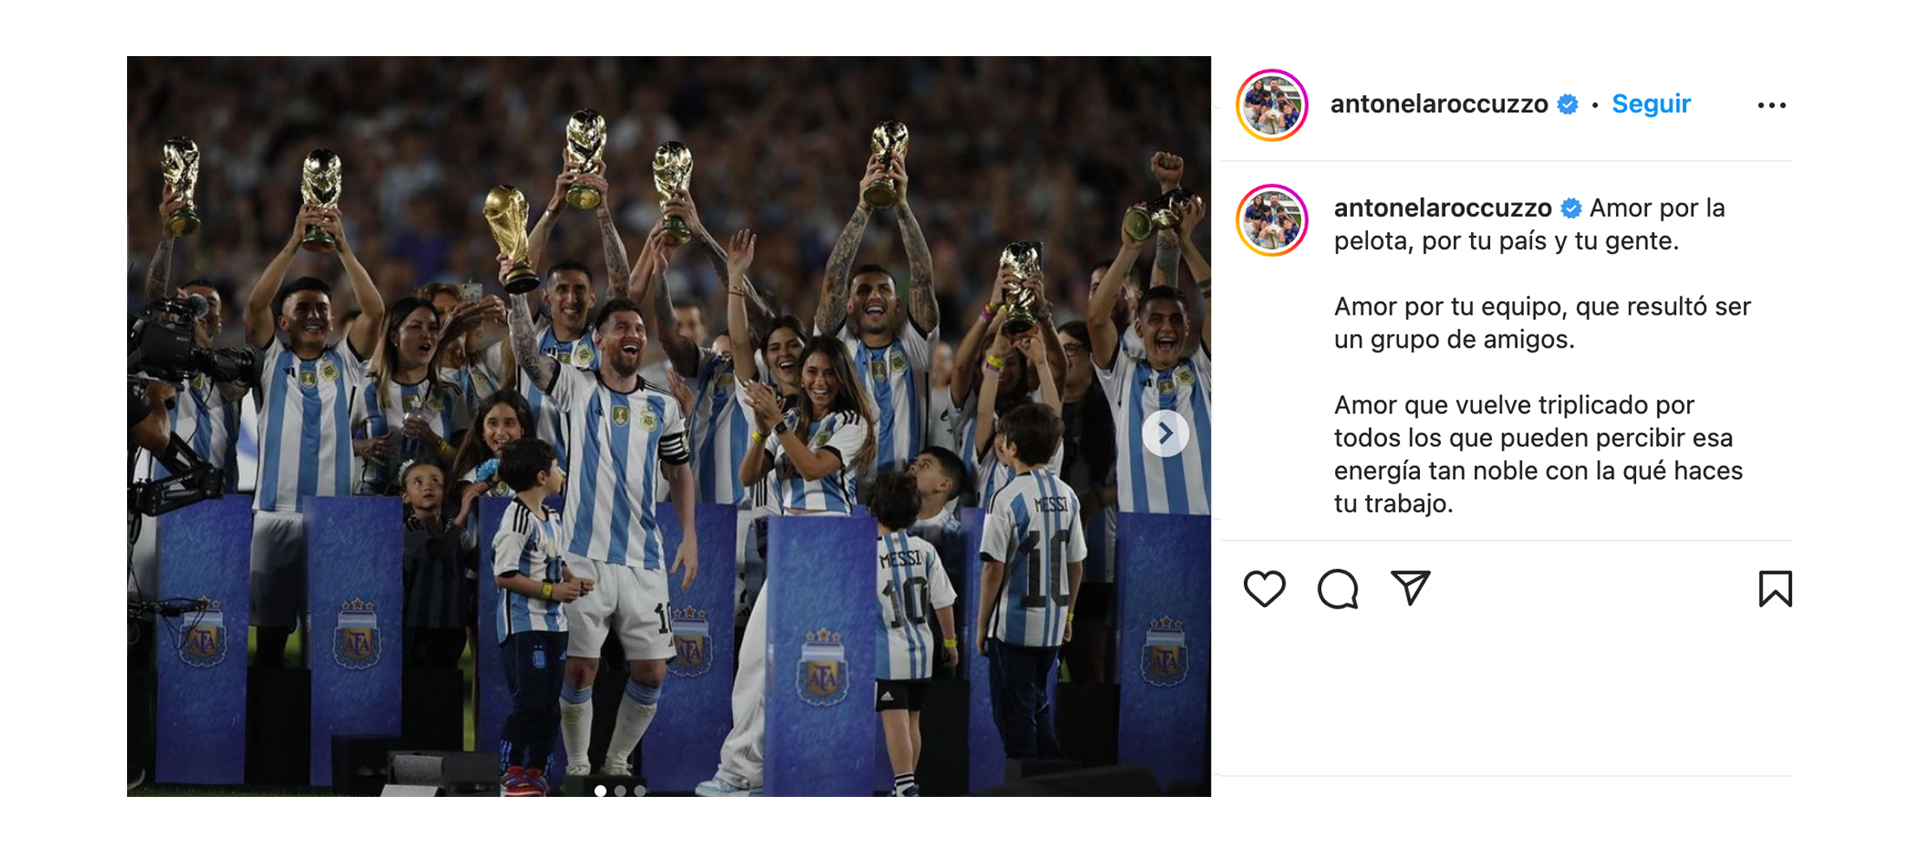 El romántico mensaje de Antonela Roccuzzo a Messi